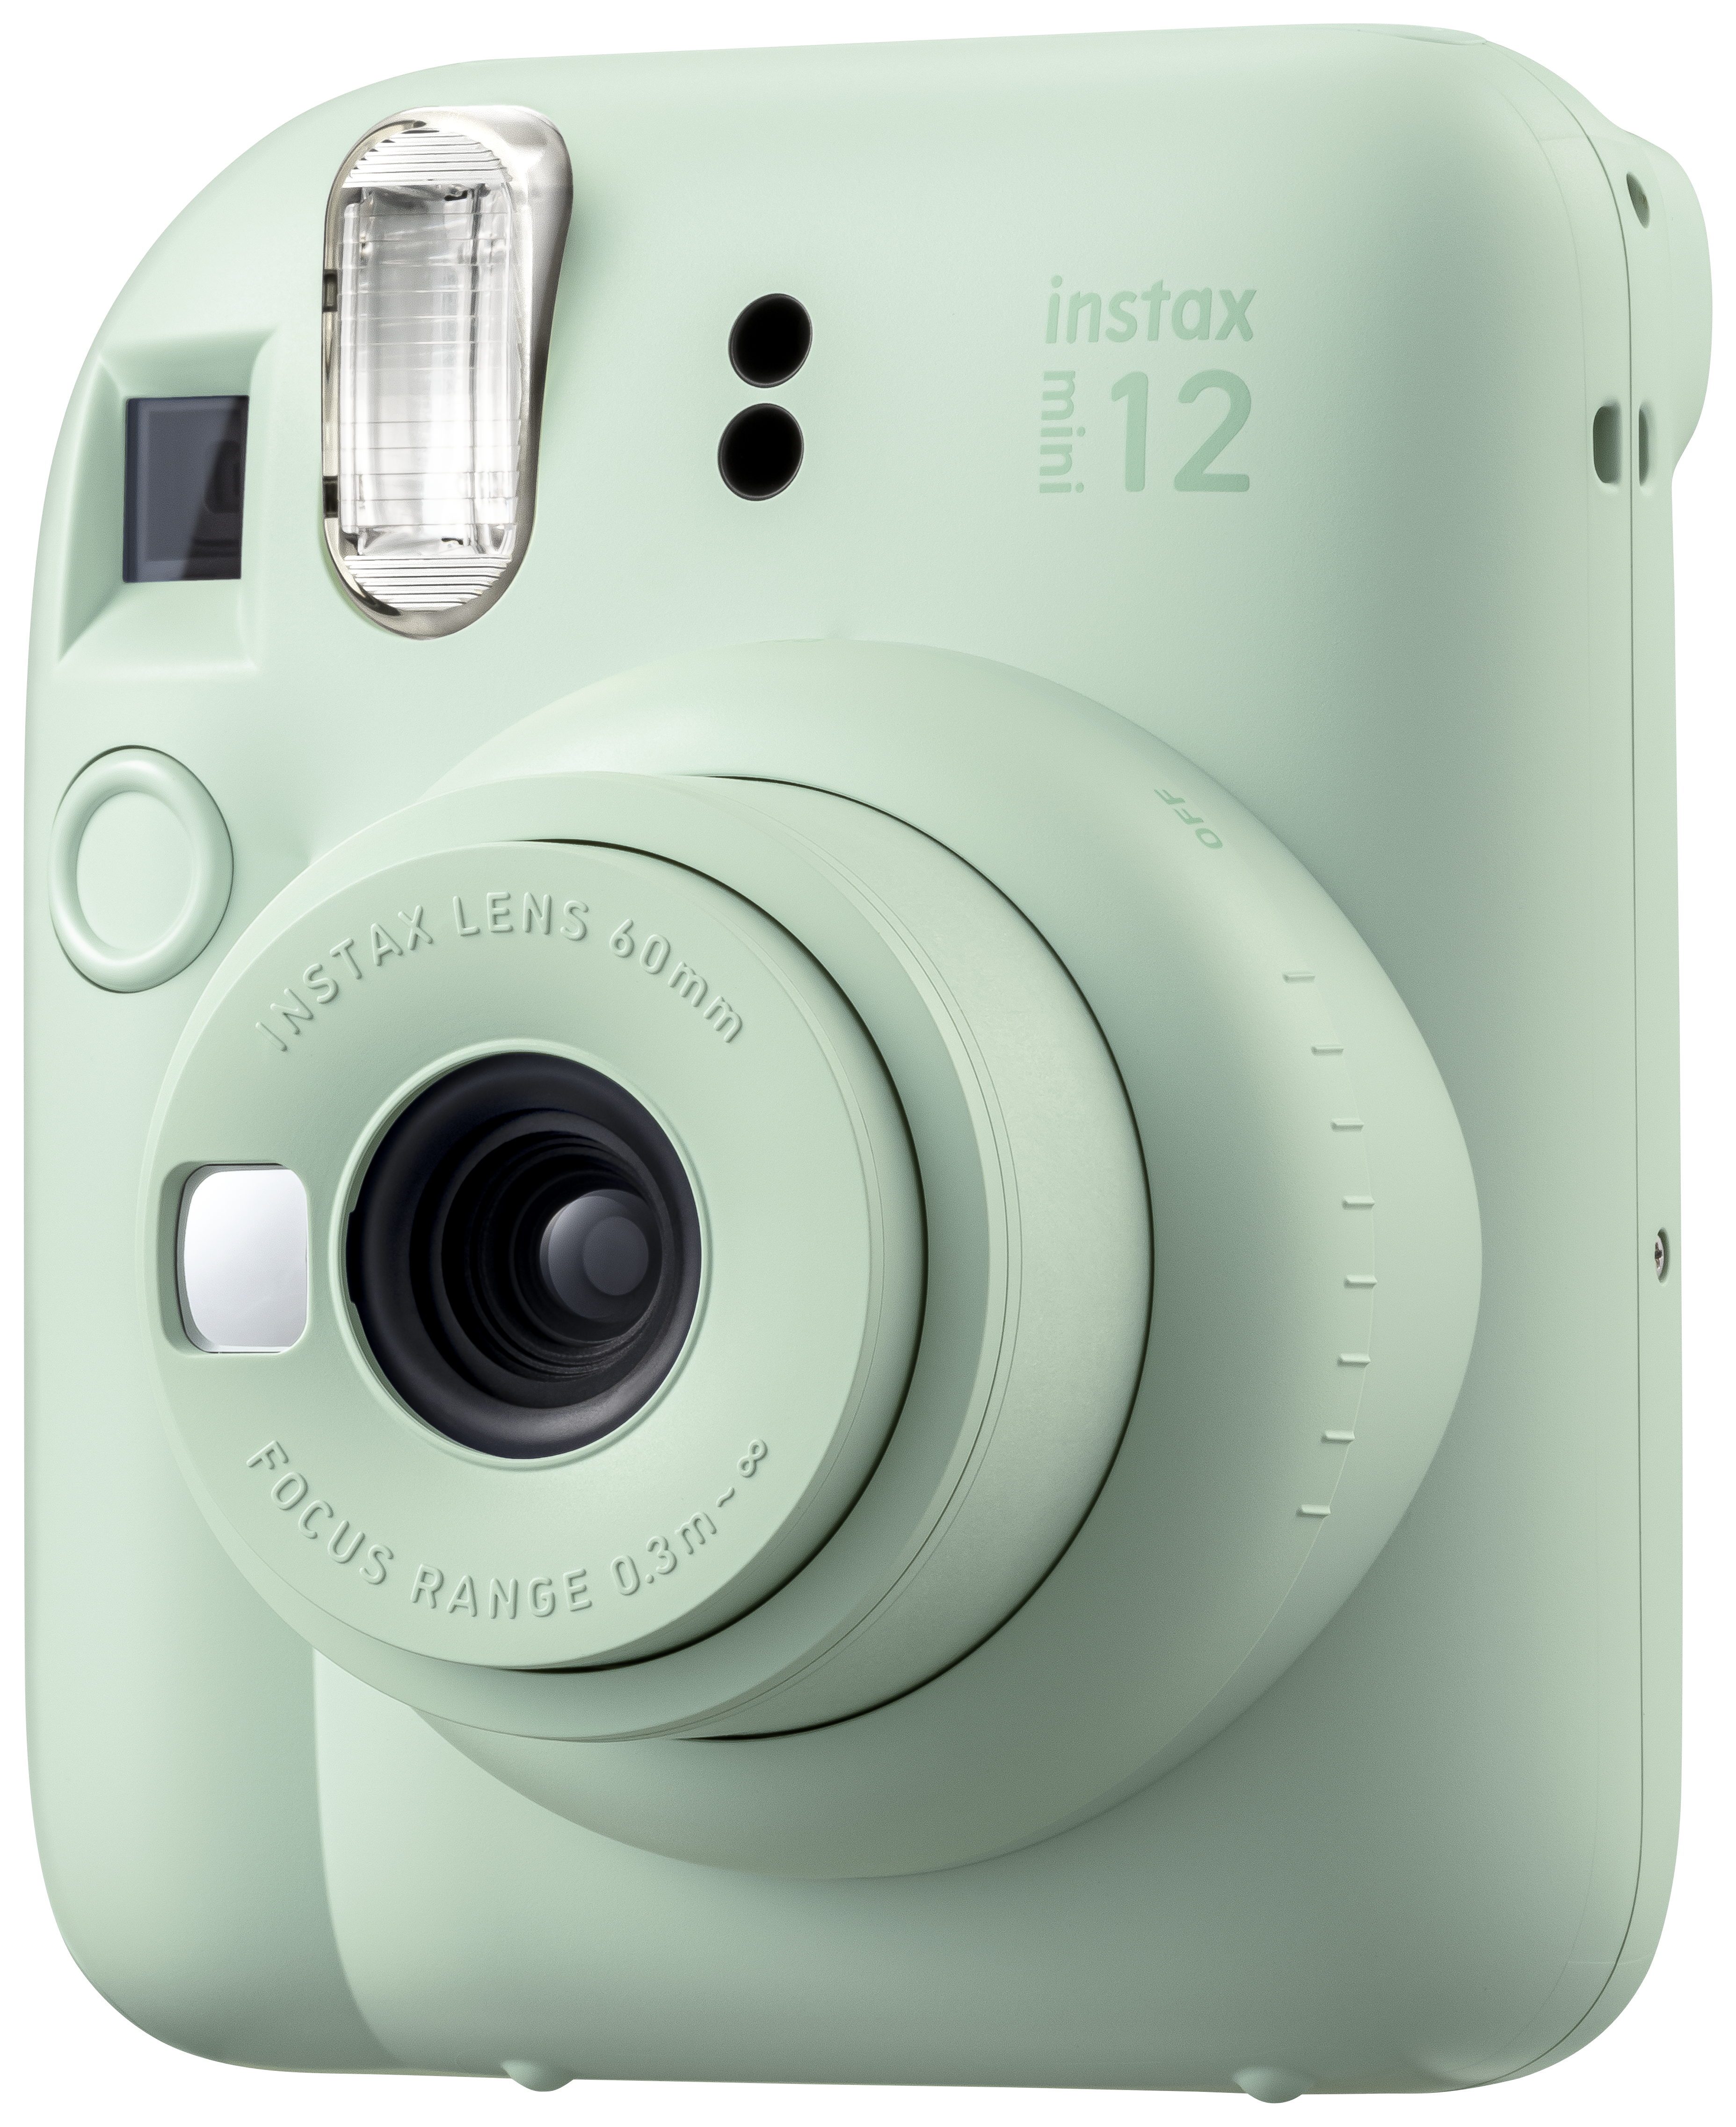 12 Mint Green Sofortbildkamera, FUJIFILM INSTAX mini